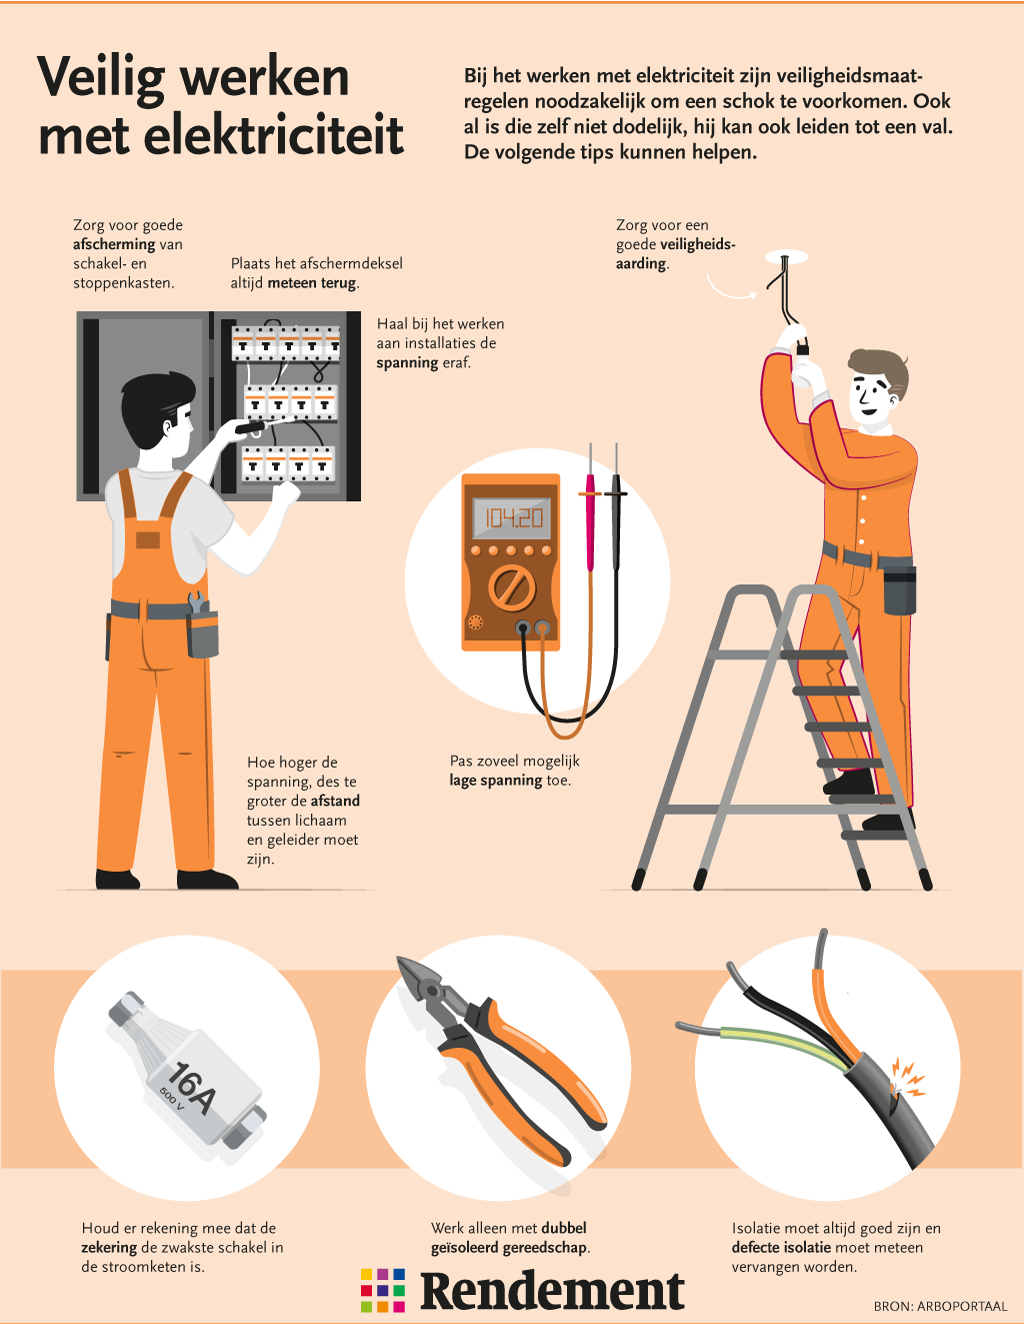 Bij het werken met elektriciteit zijn veiligheidsmaatregelen noodzakelijk om een schok te voorkomen. In deze infographic vindt u tips die kunnen helpen.